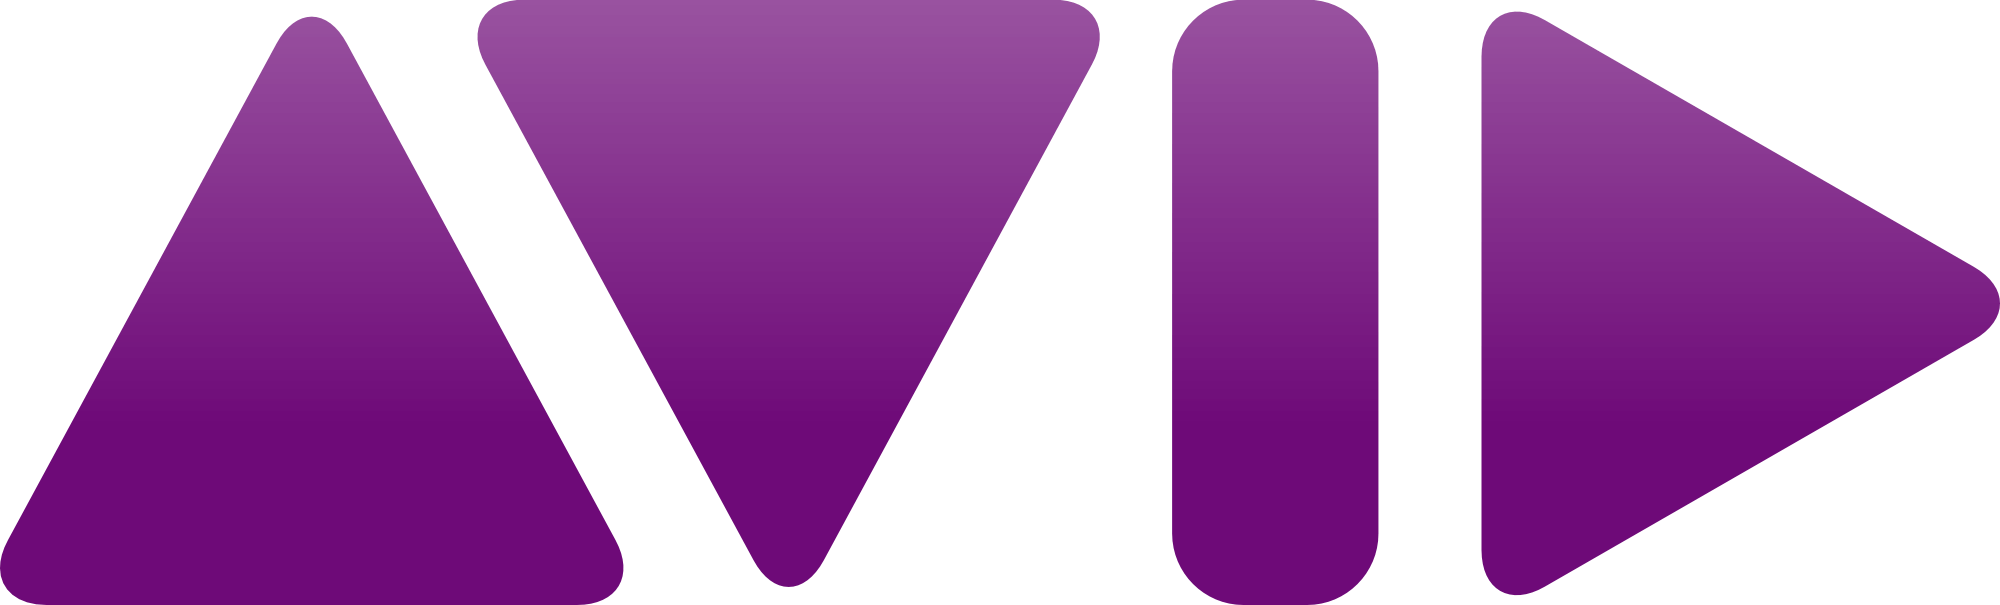 Avid Logo - Avid Logo - TM Television